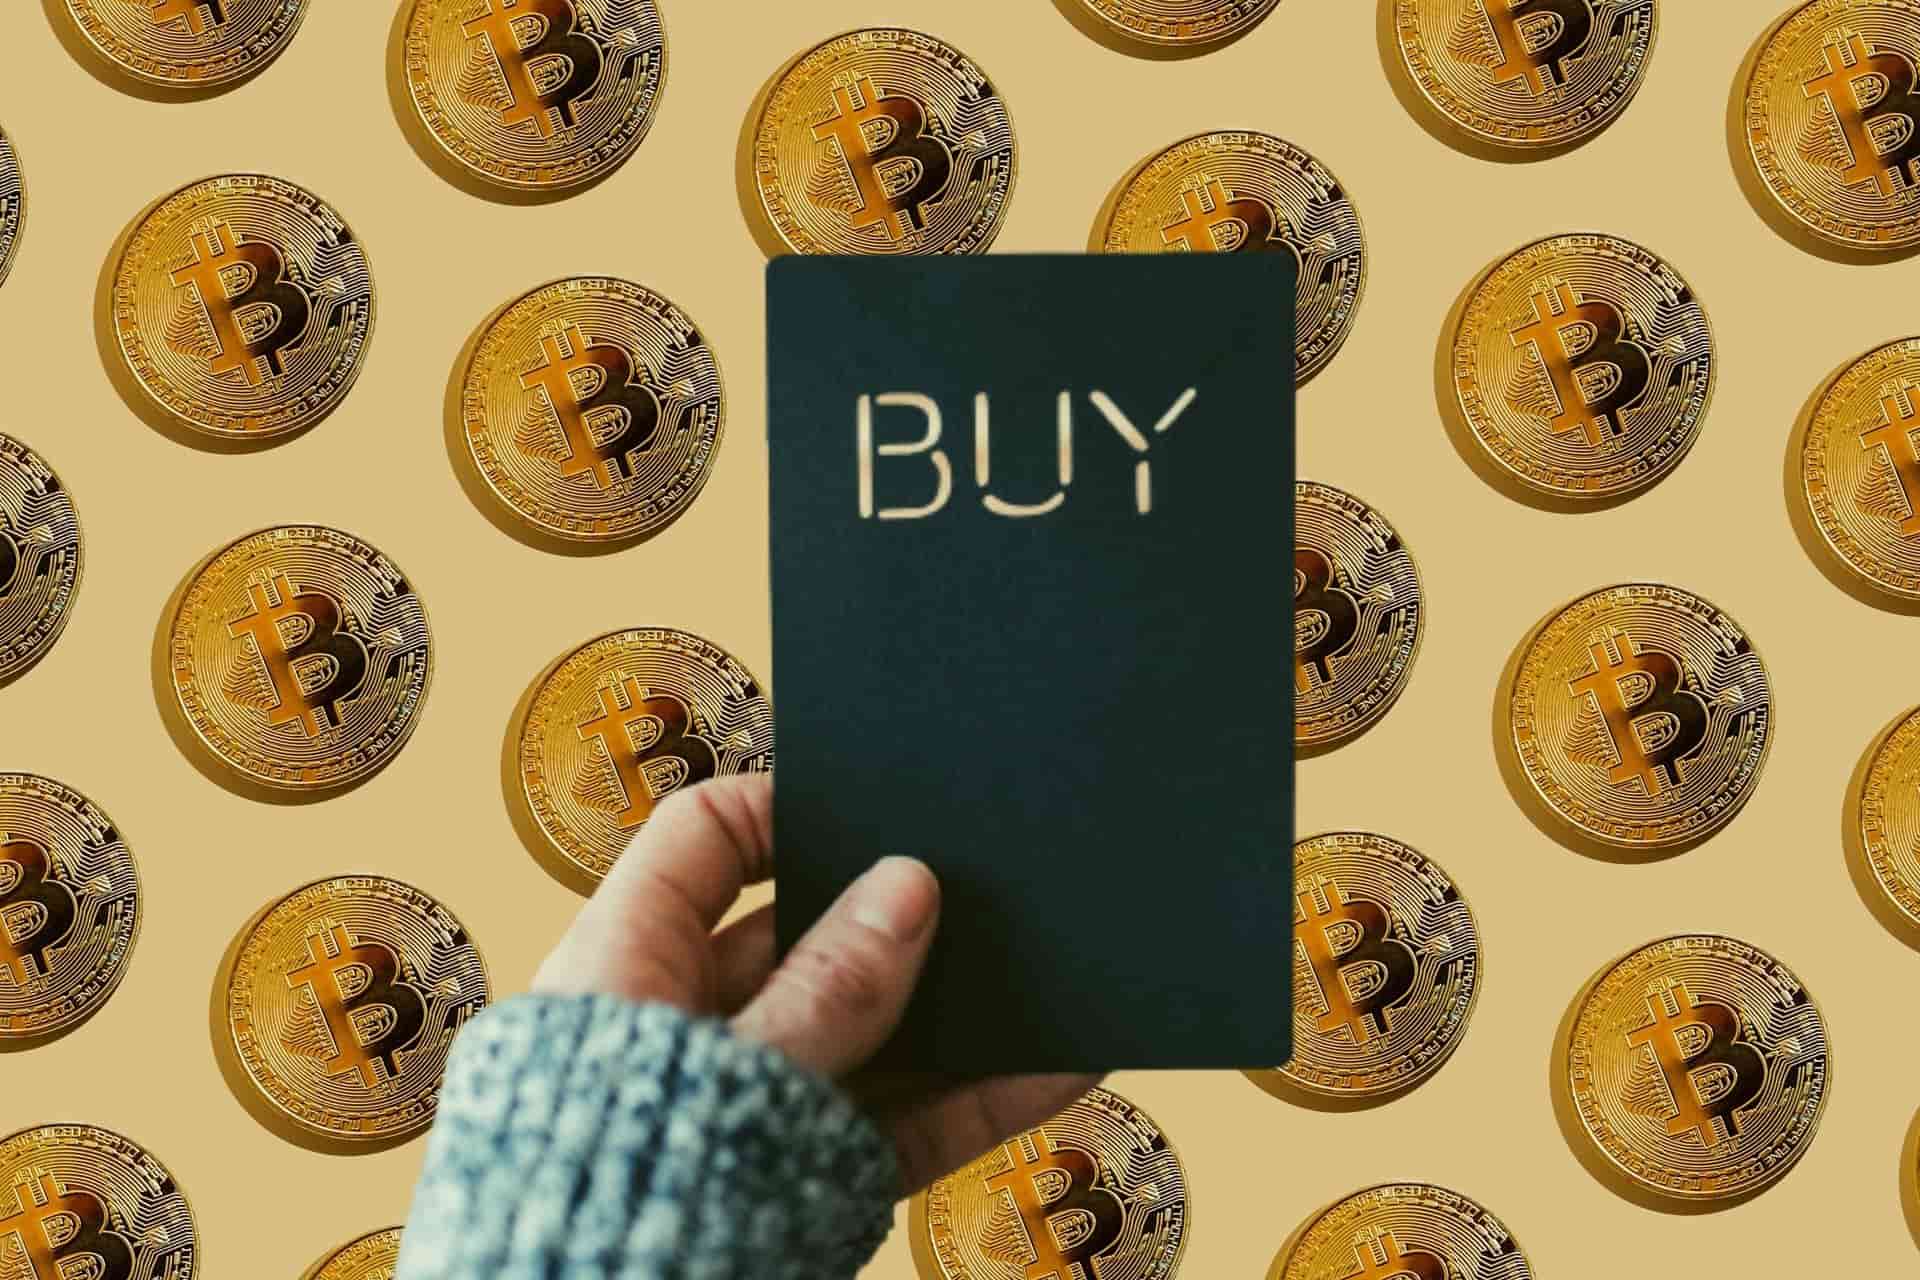 comprar-bitcoin-unsplash